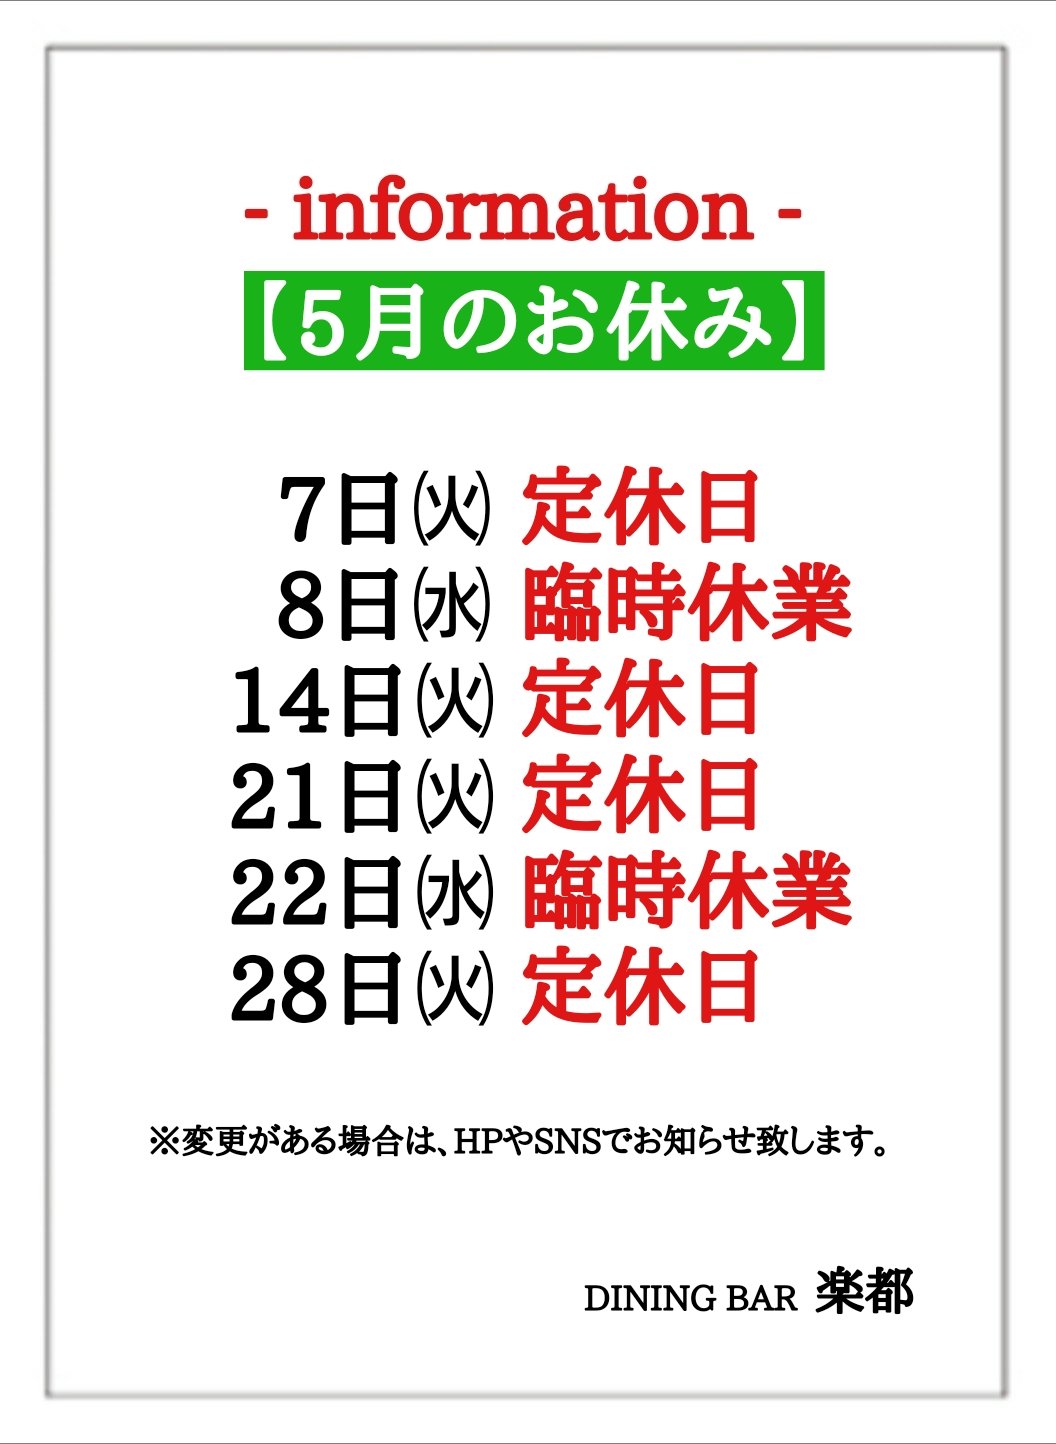 ダイニングバー 楽都 営業・イベントカレンダー No.0